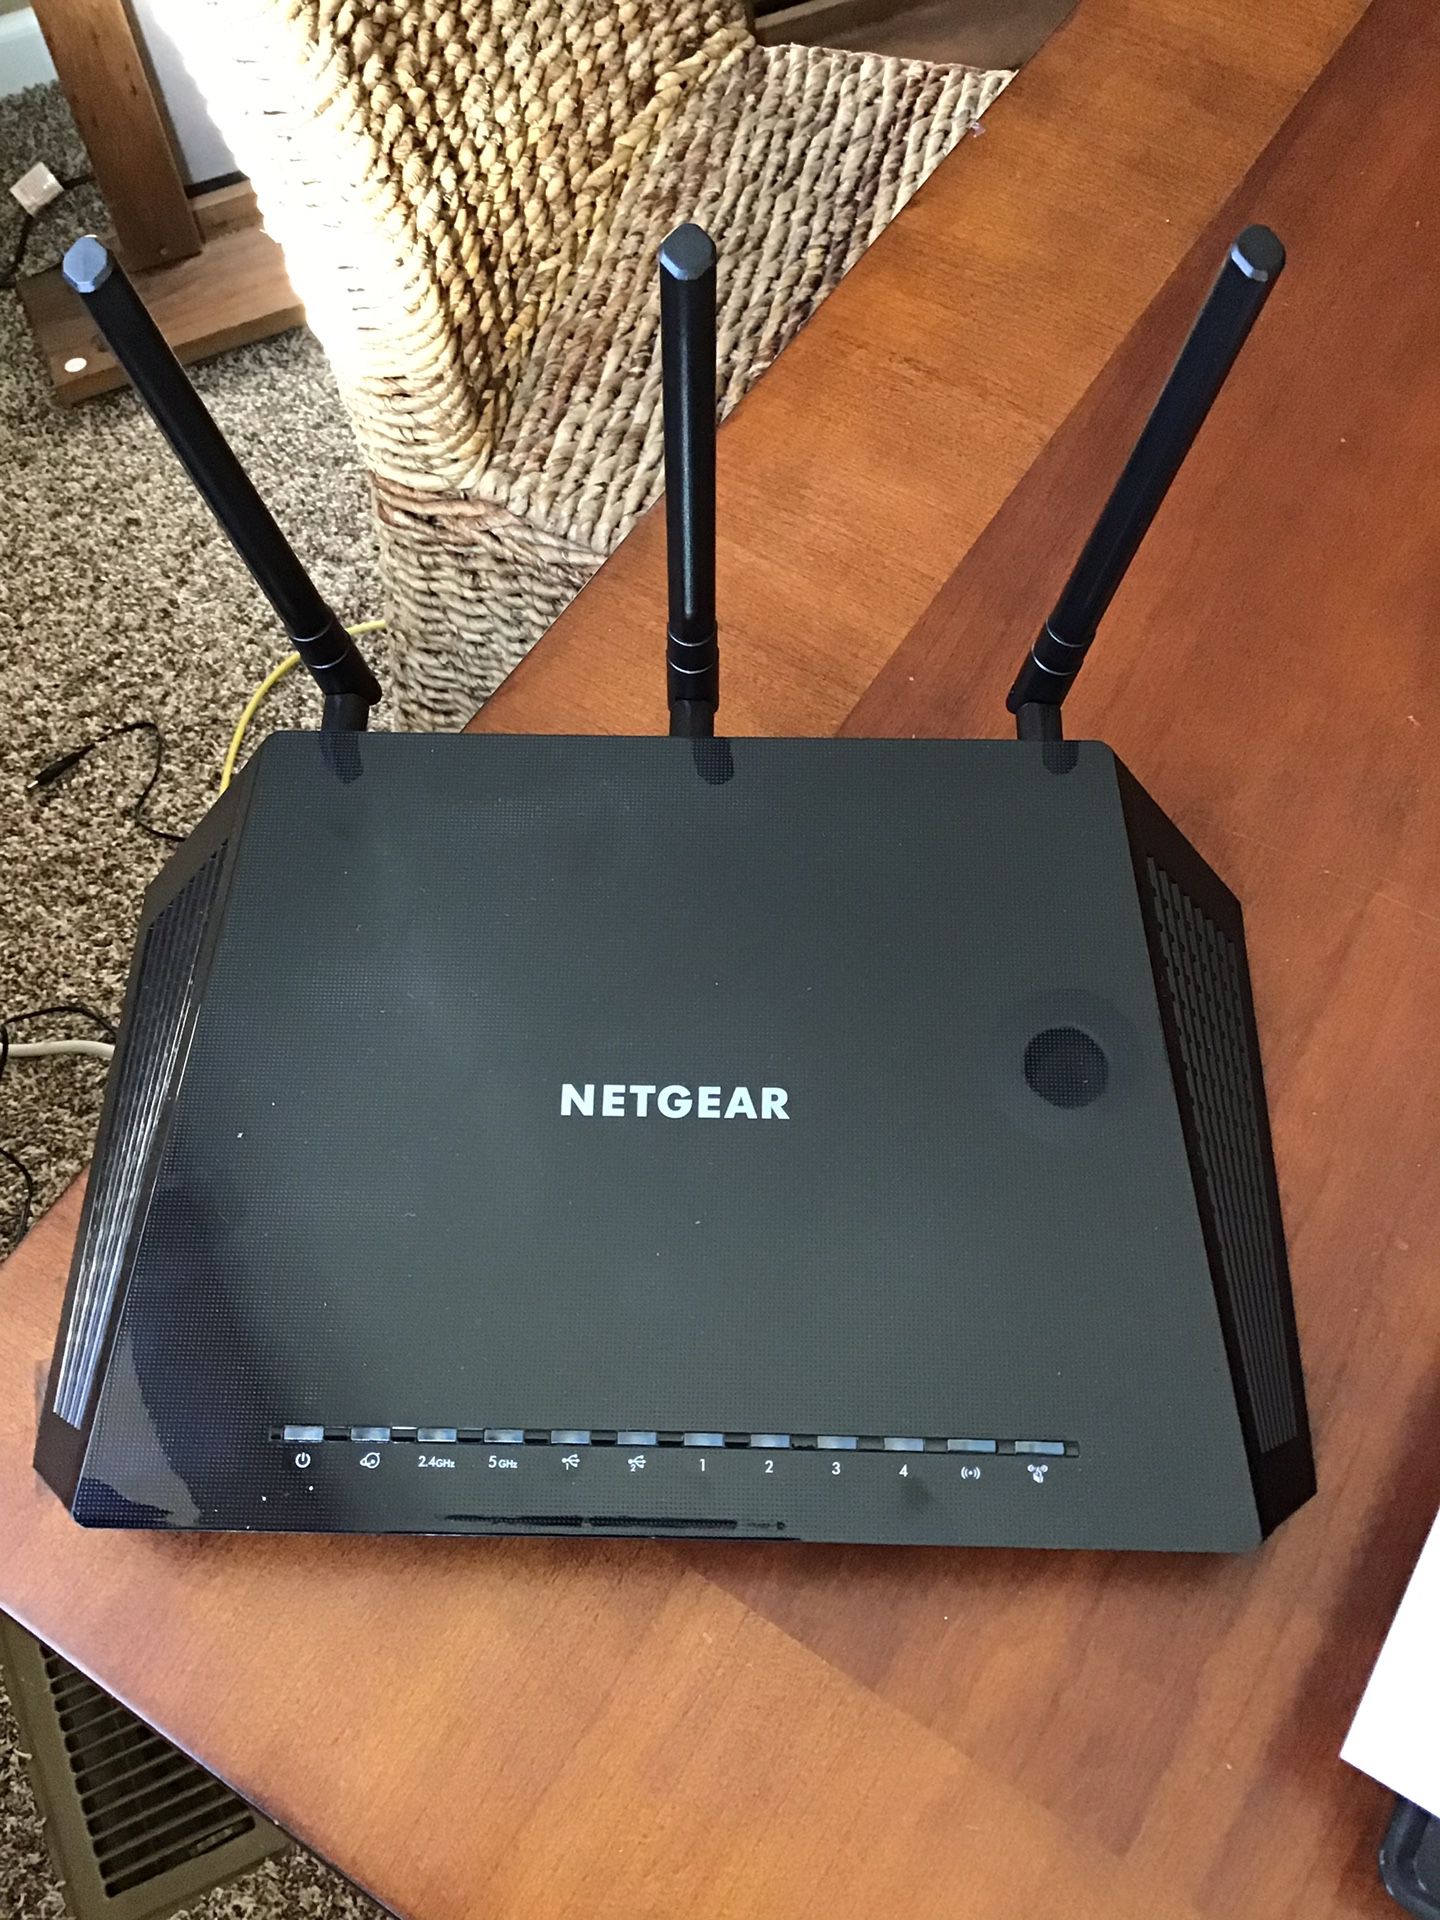 NETGEAR network extender